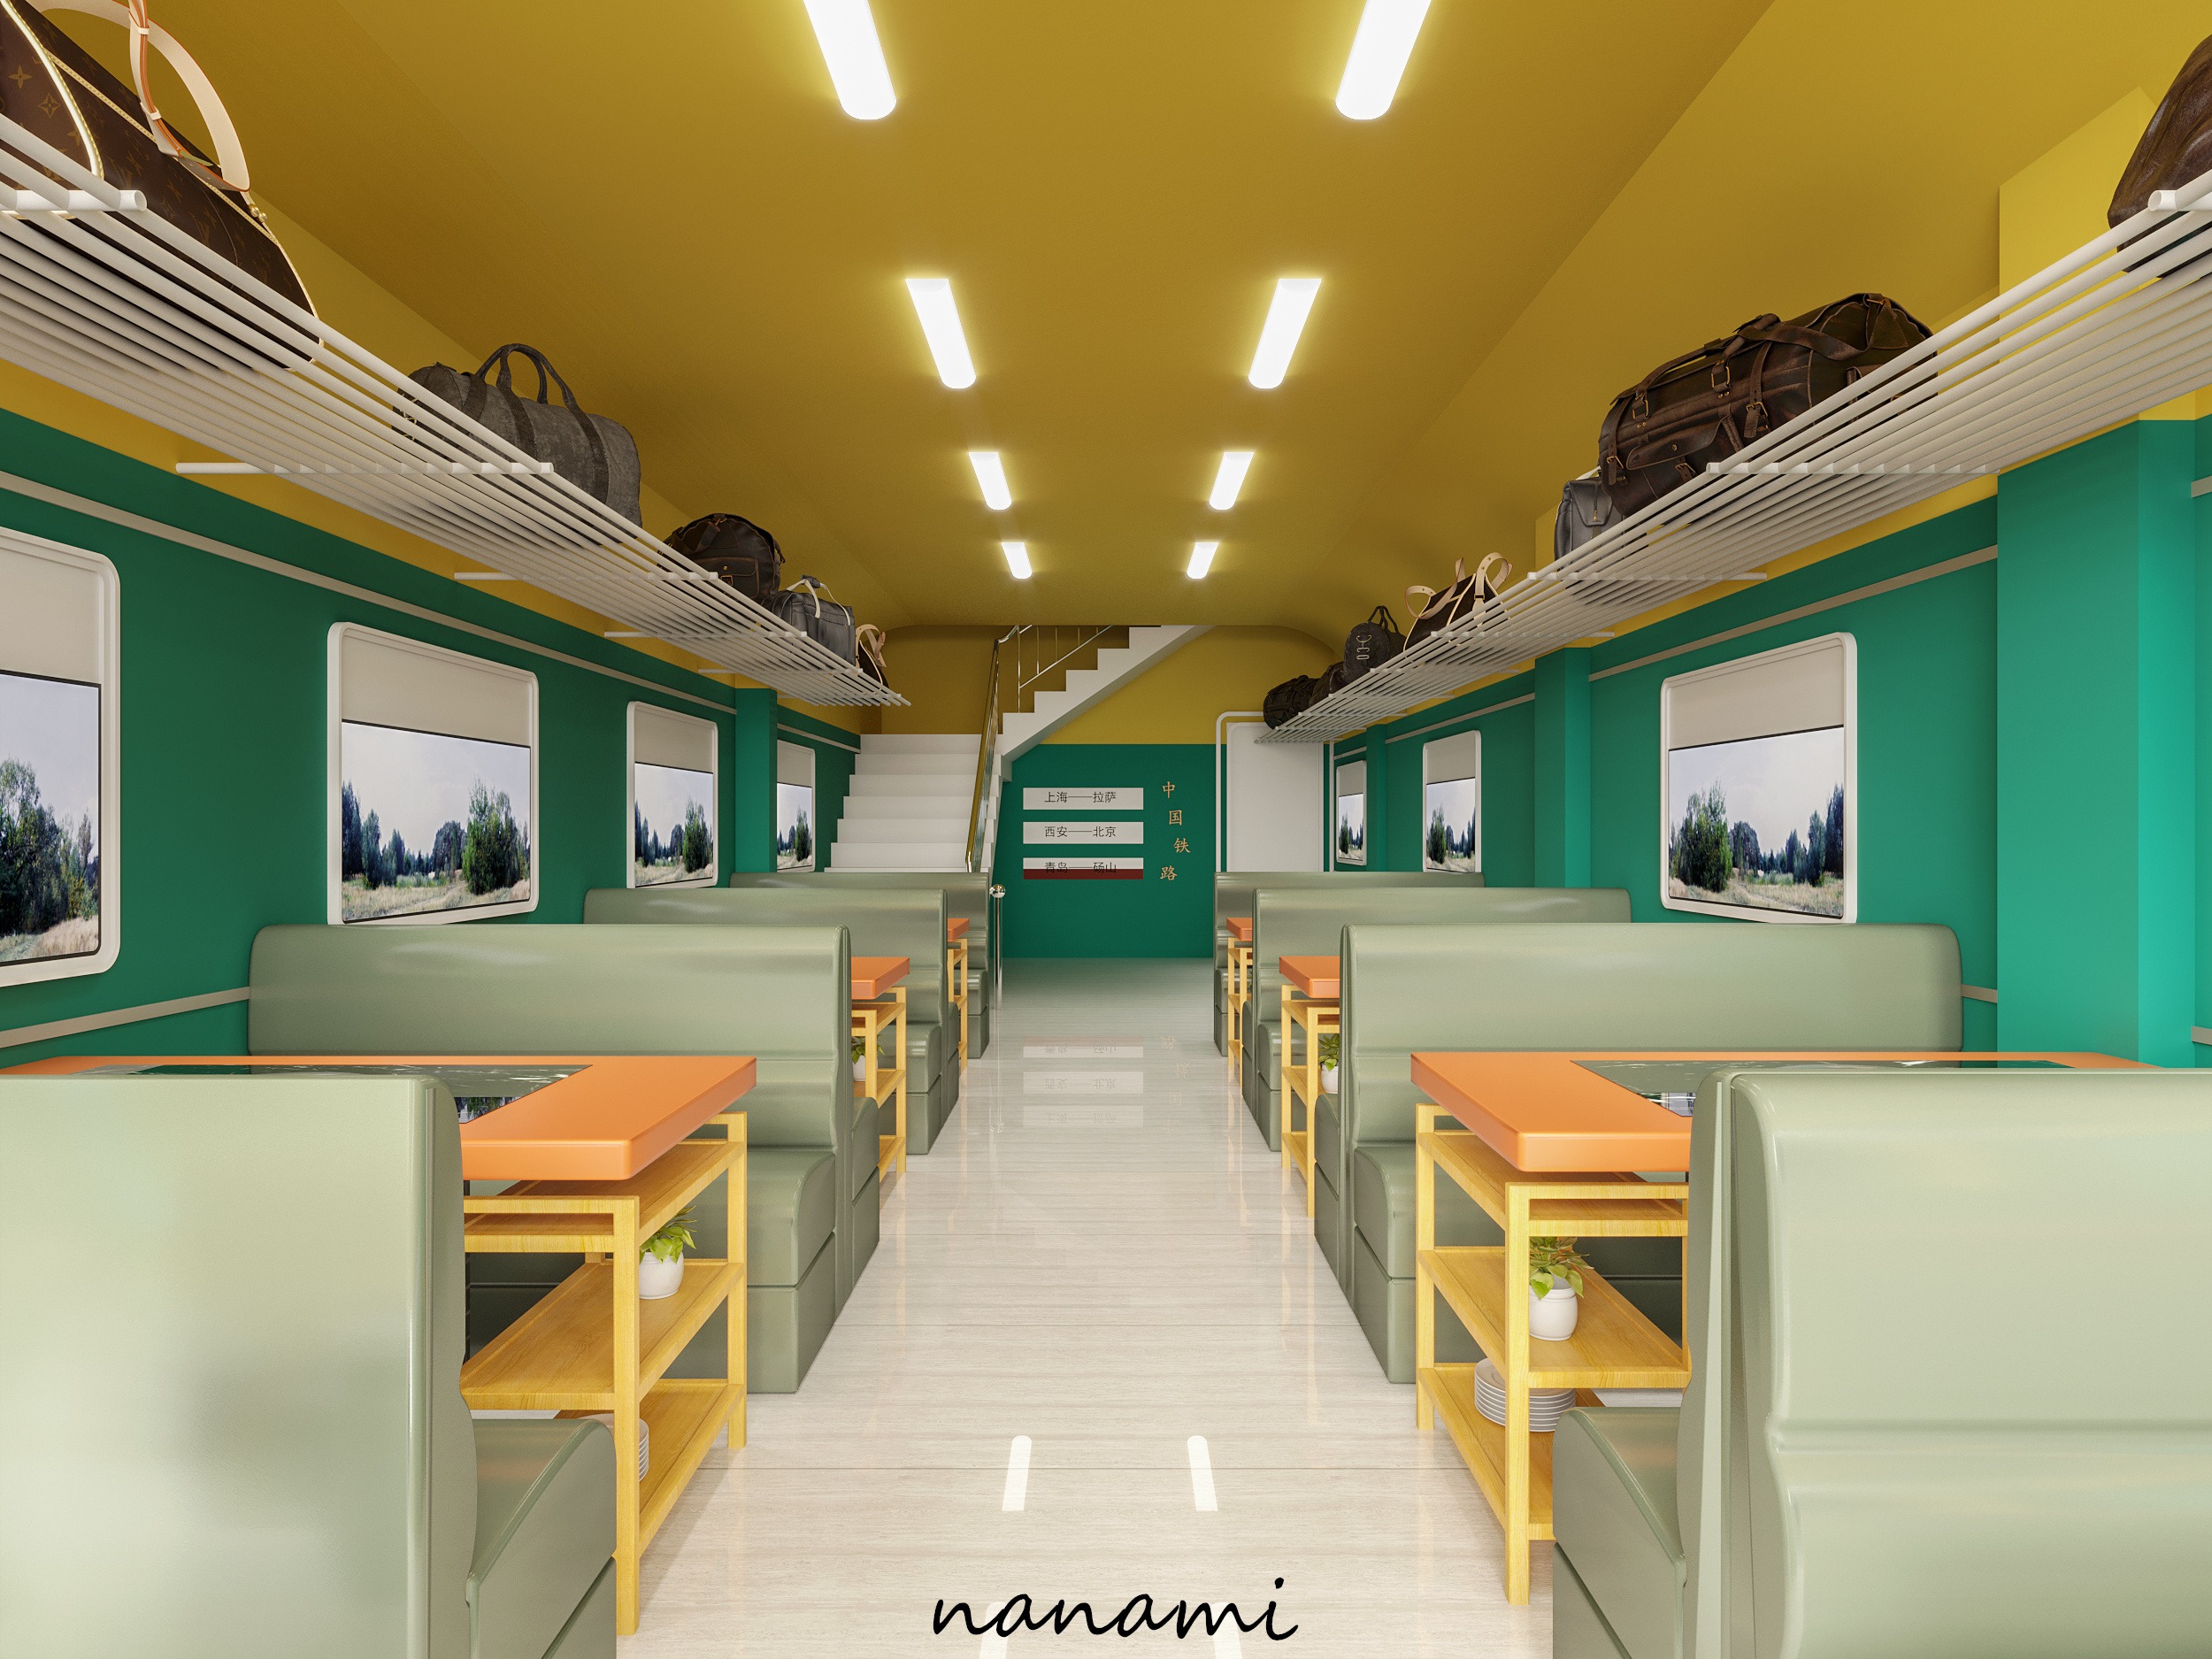 绿皮火车记忆餐厅地道俄式西餐在充满回忆的绿皮火车里品尝美味的